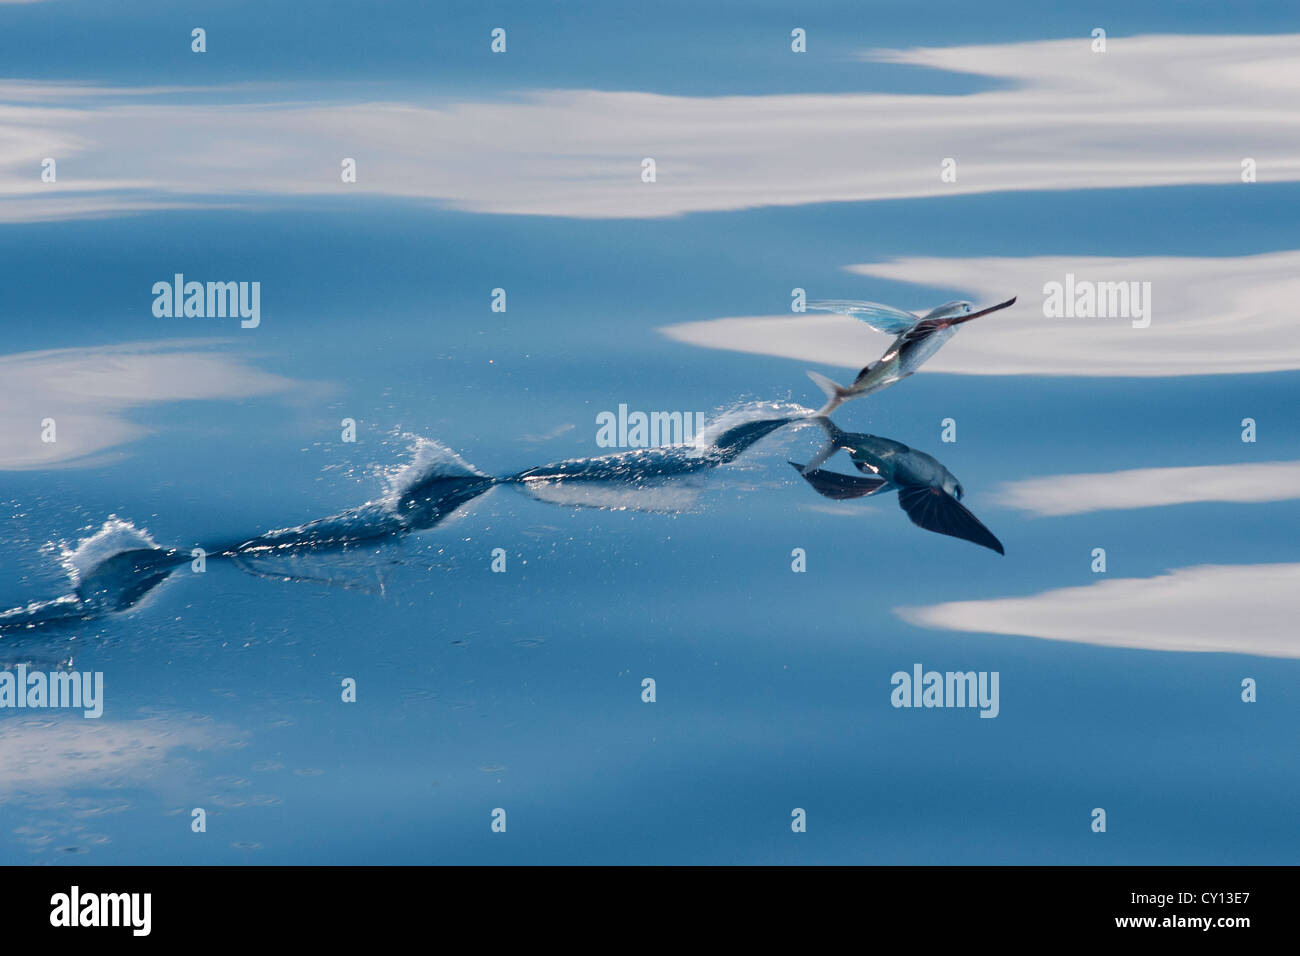 Les espèces de poissons volants (nom scientifique inconnu) avec reflet visible, décoller et laissant une trace sur l'eau. L'Océan indien Banque D'Images